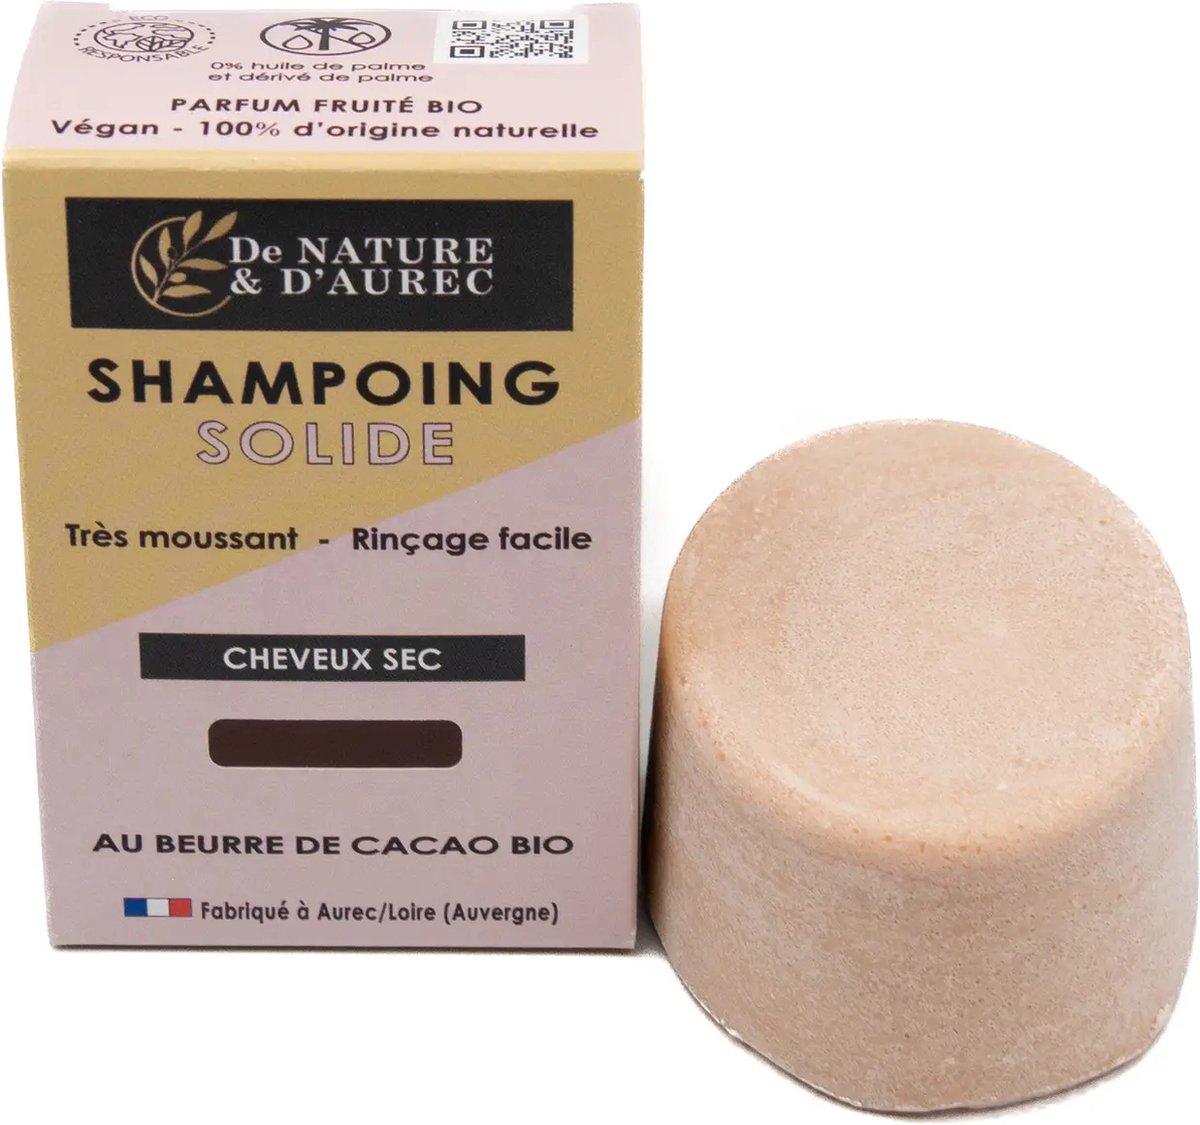 De NATURE ET D’AUREC – Solid shampoo: DROOG HAAR